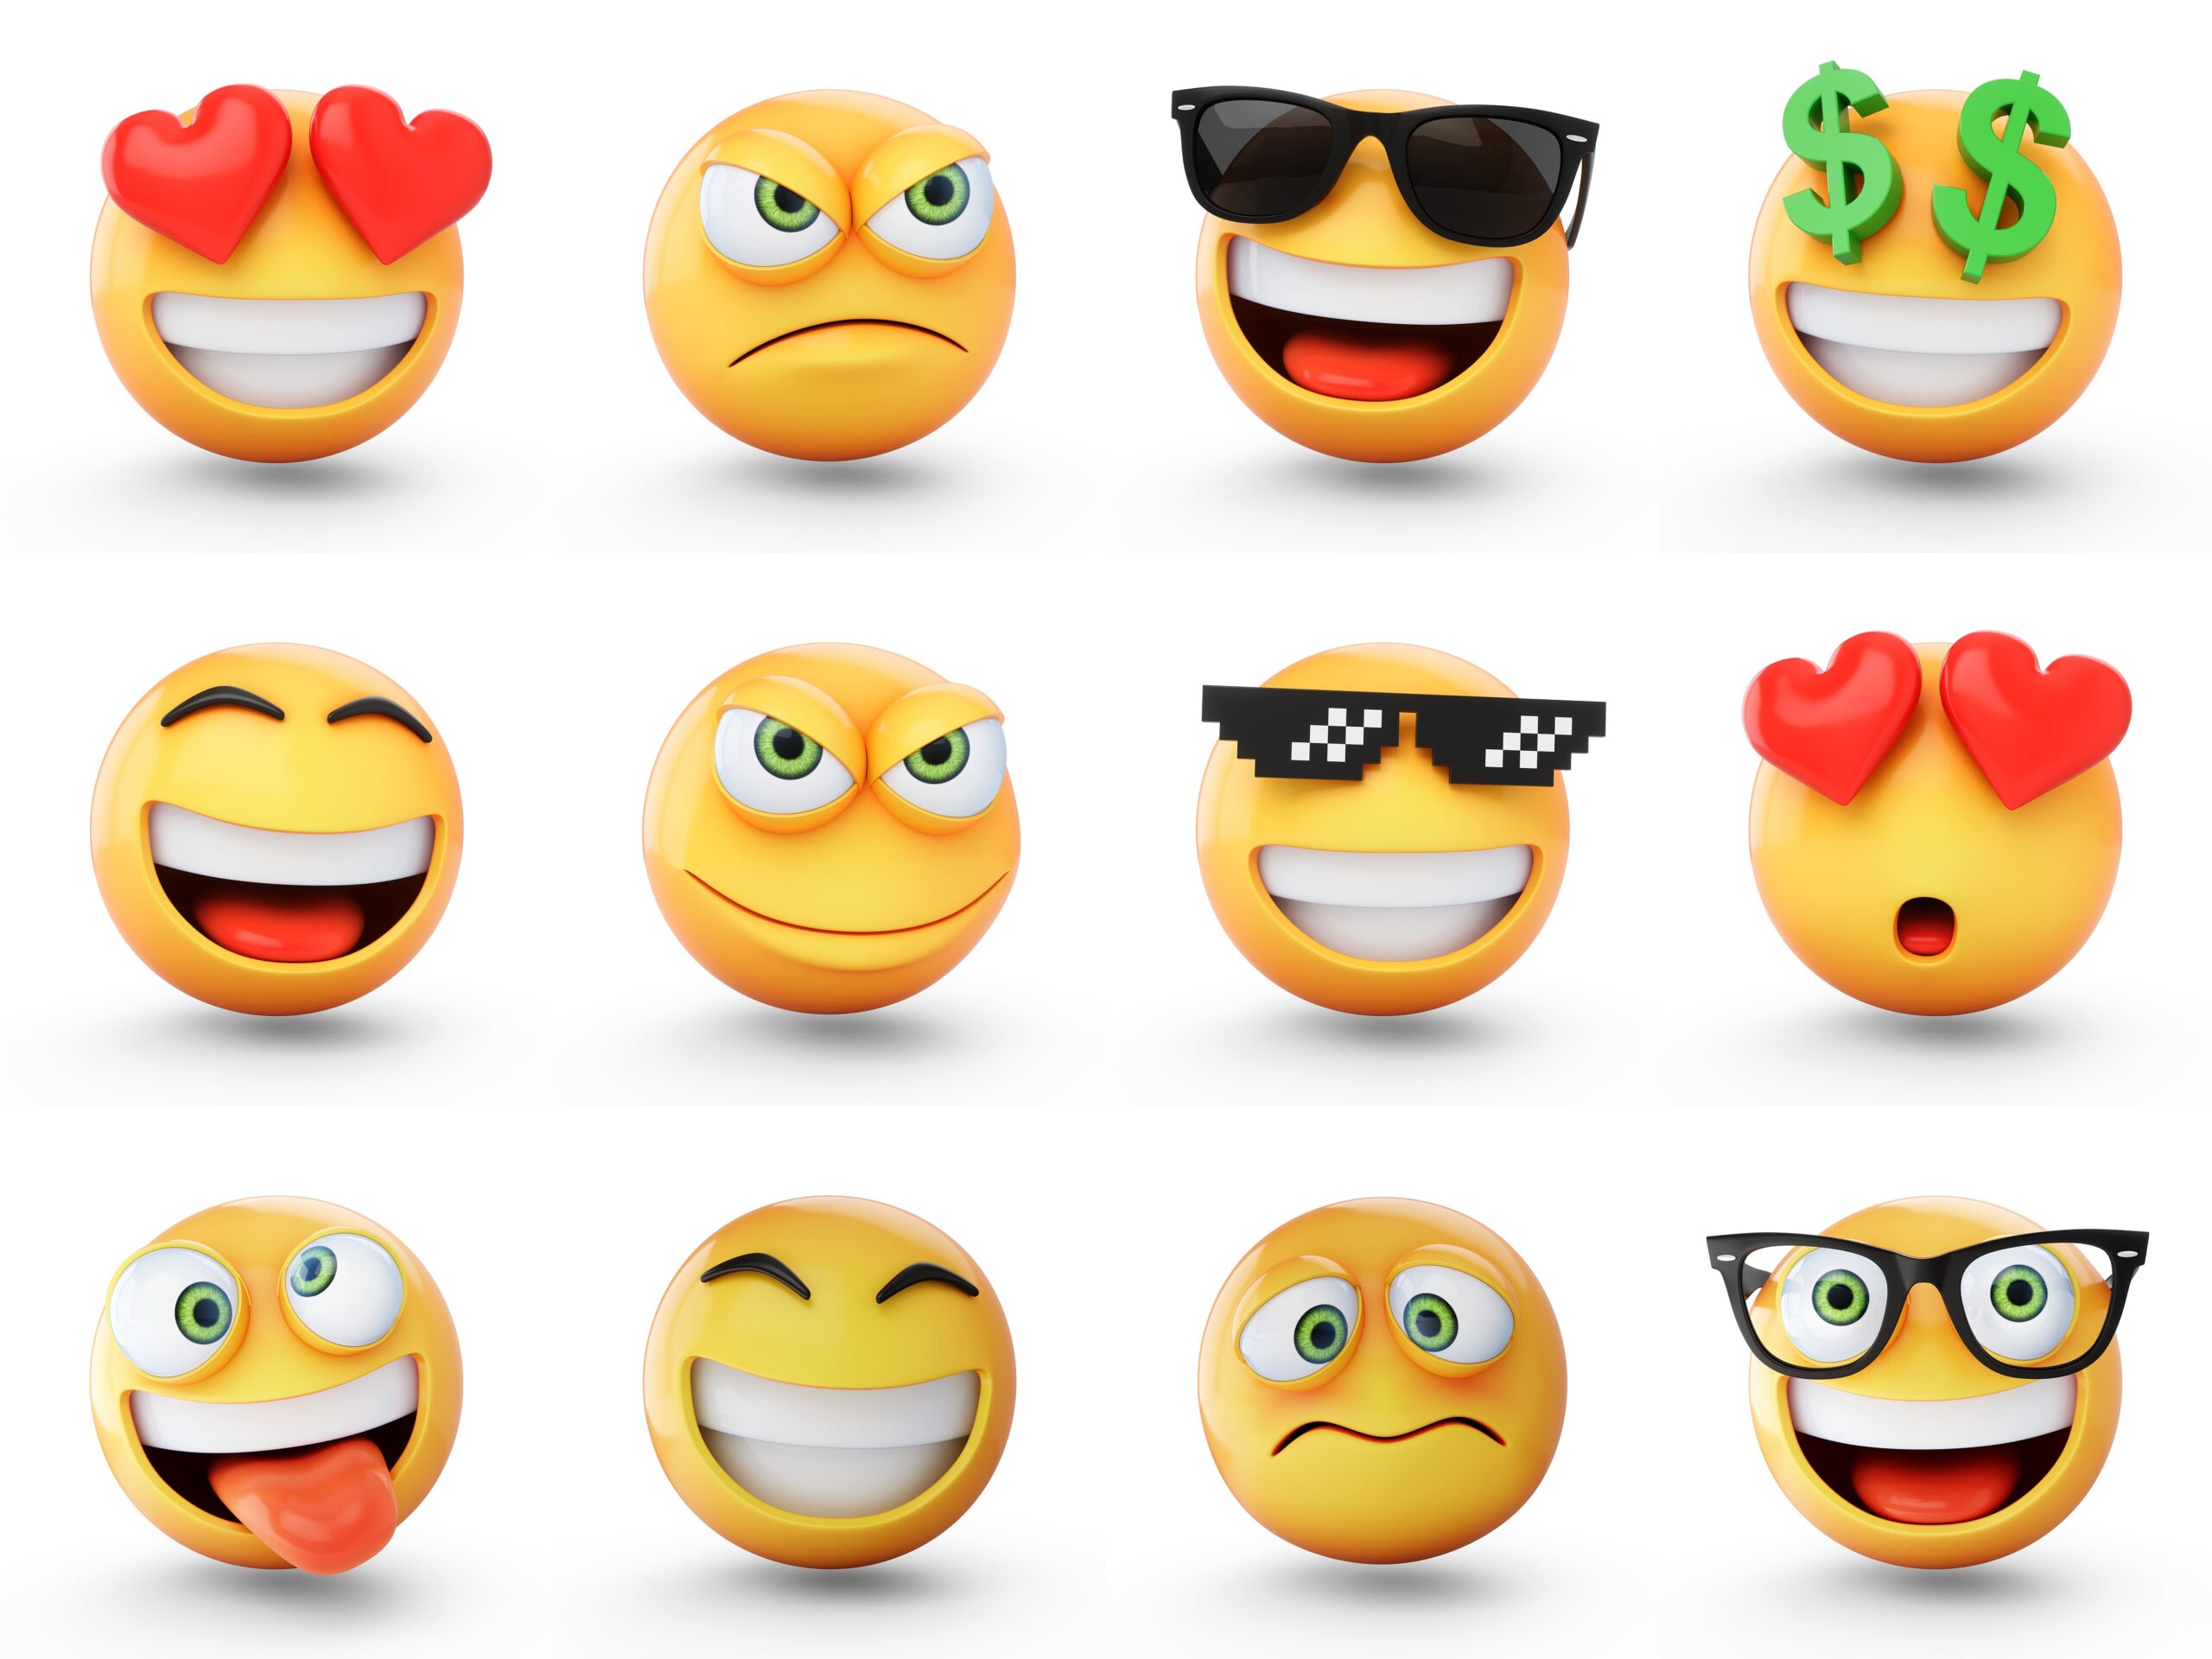 3D emojis